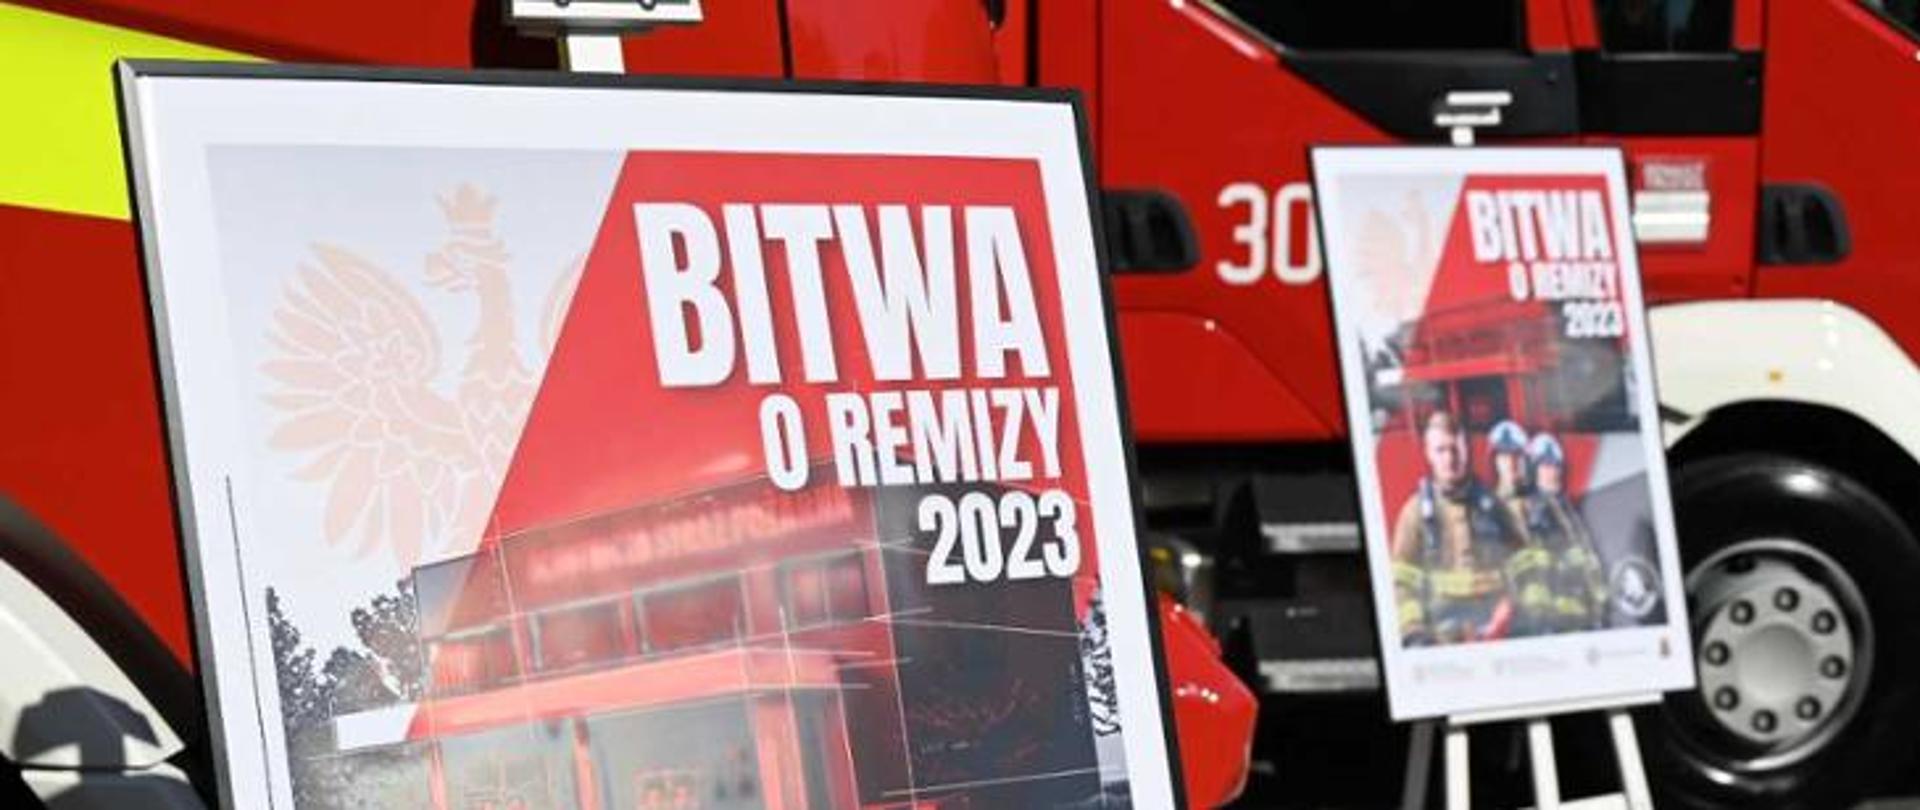 Plakat „Bitwa o remizy” – rząd sfinansuje termomodernizację i doposażenie remiz dla gmin o najwyższej frekwencji wyborczej